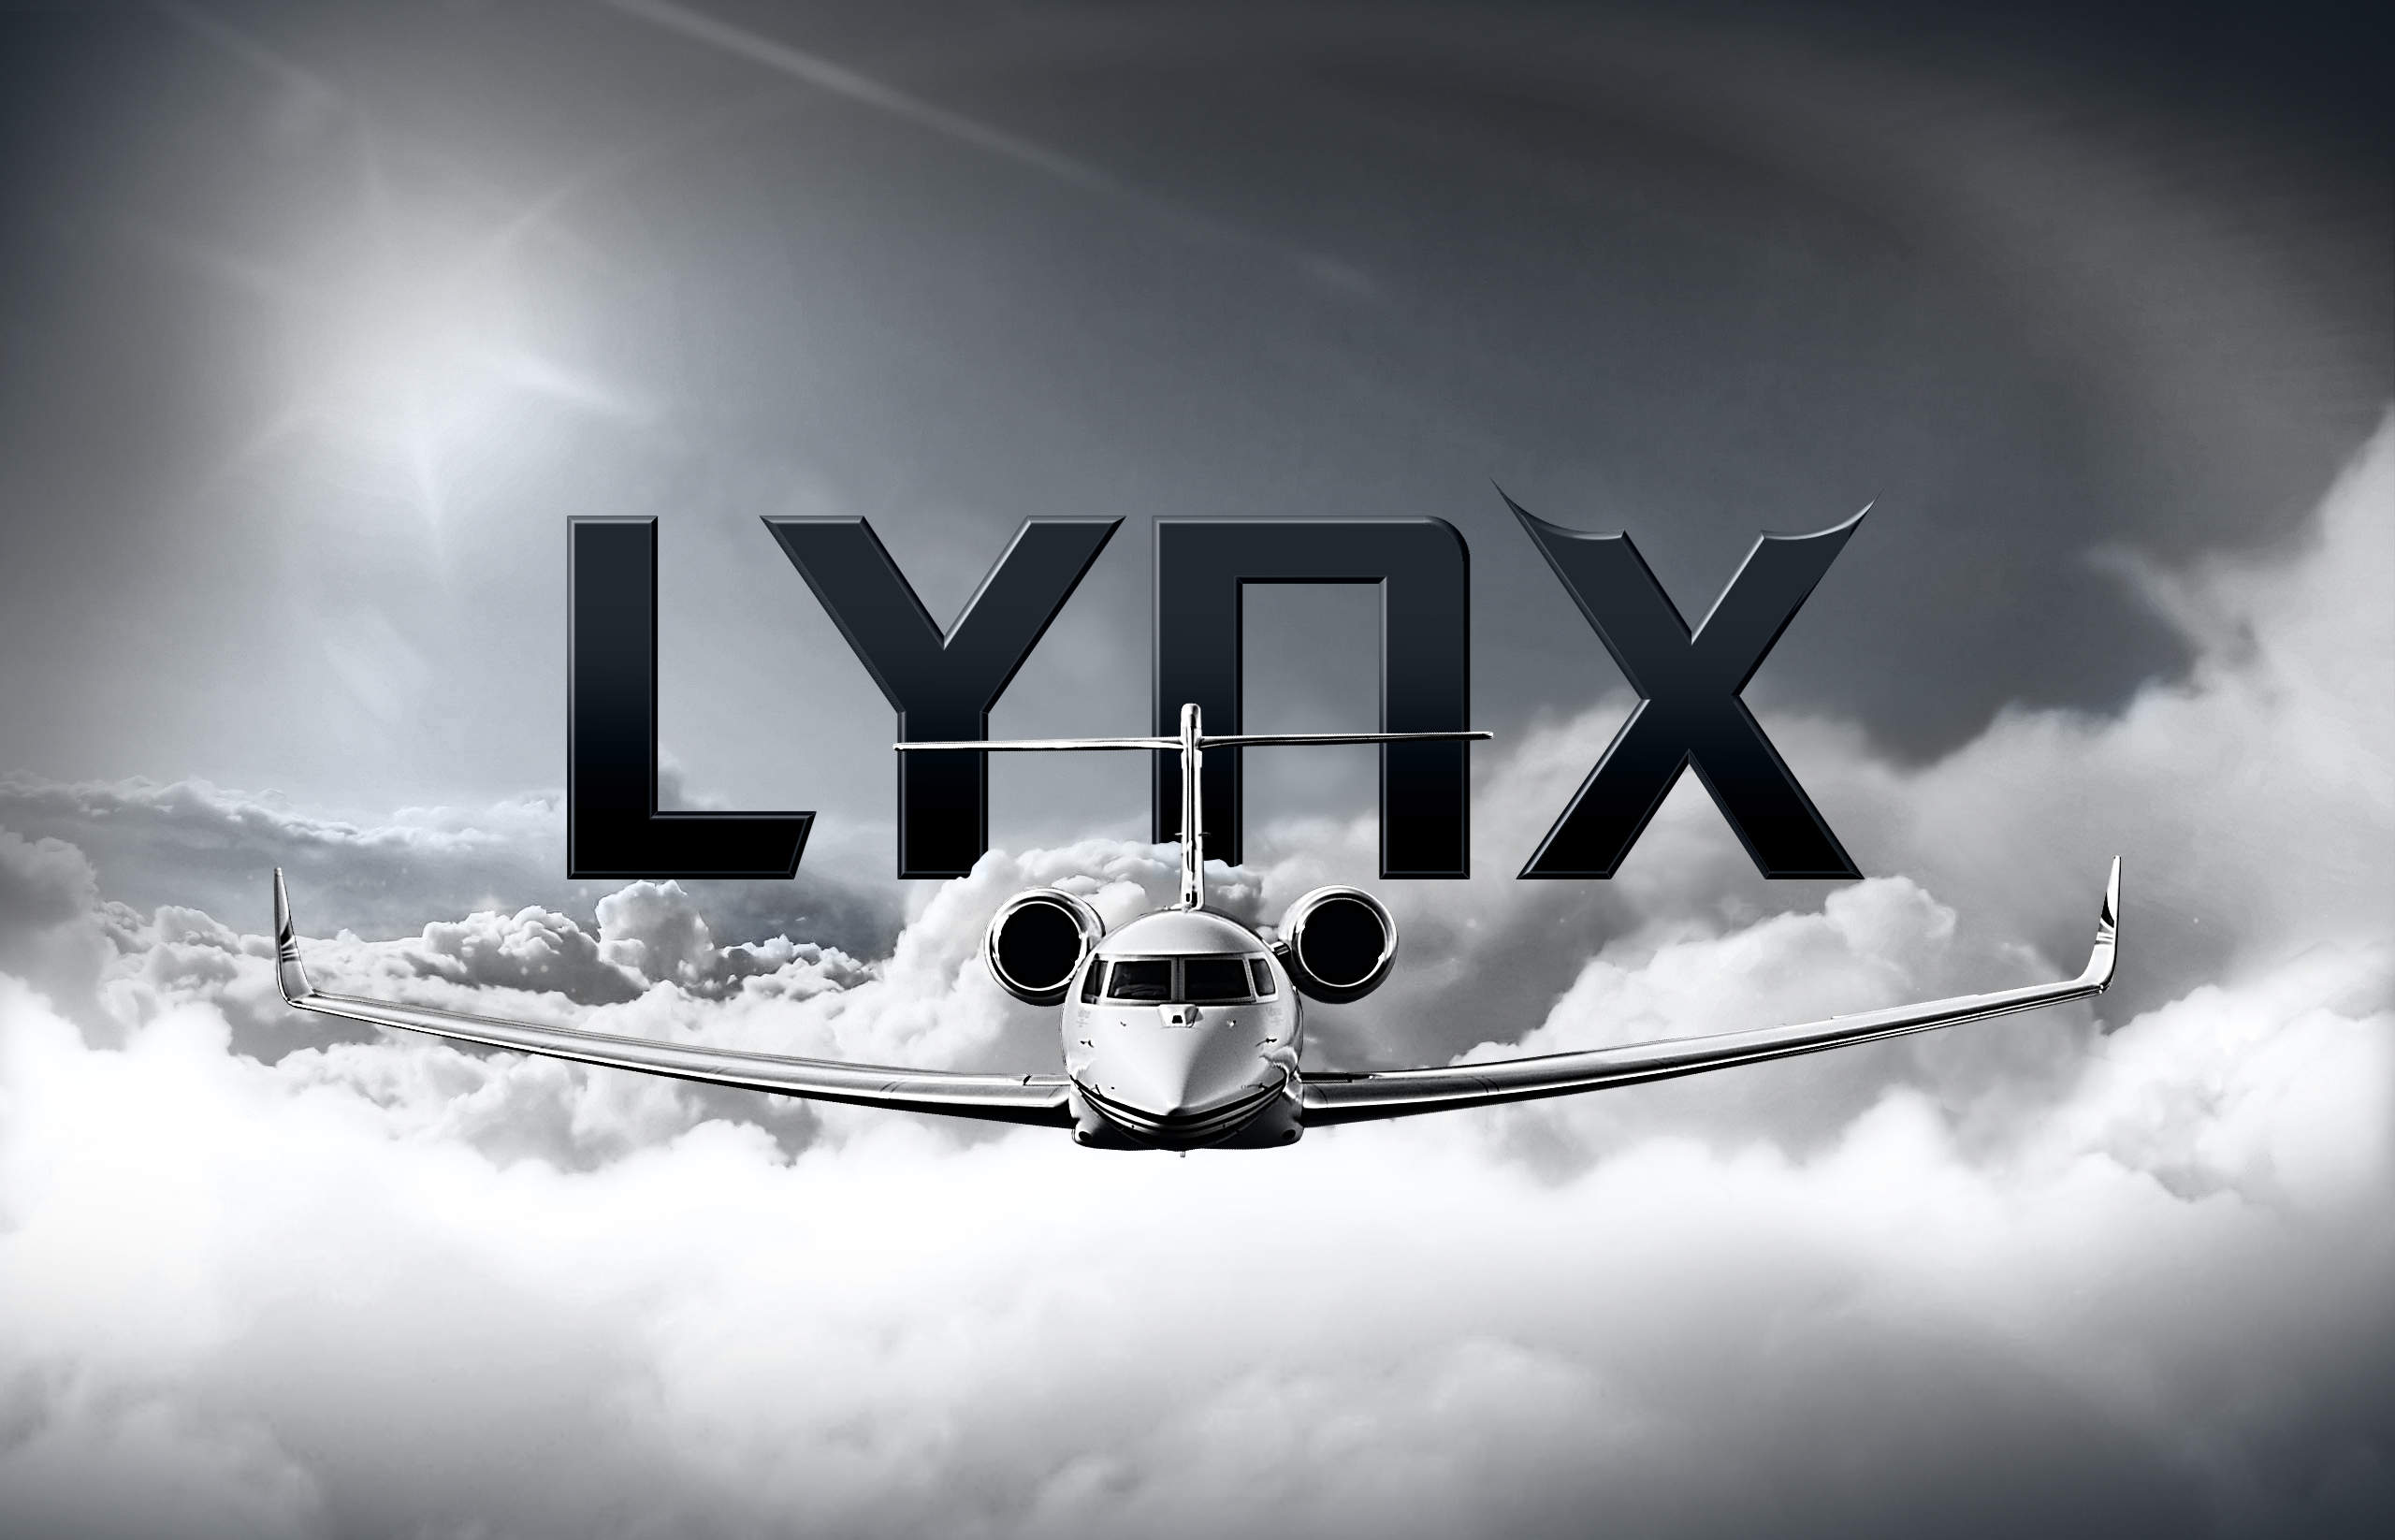 LYNX FBO NETWORK ANNOUNCES PLANS FOR NEW DEVELOPMENT